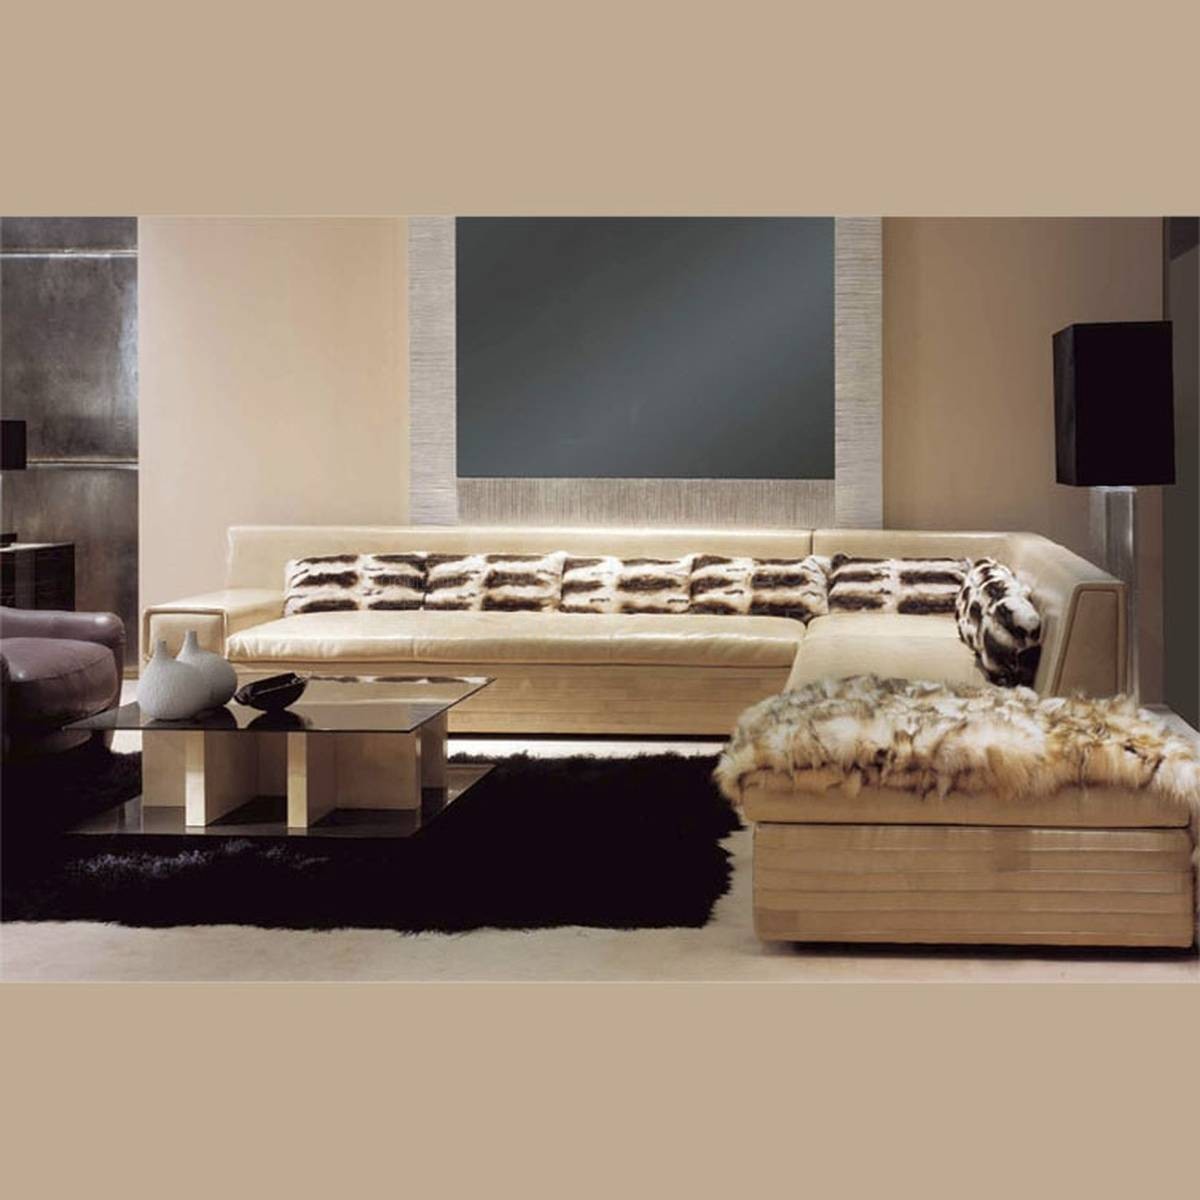 Прямой диван Palace Sofa из Италии фабрики ULIVI